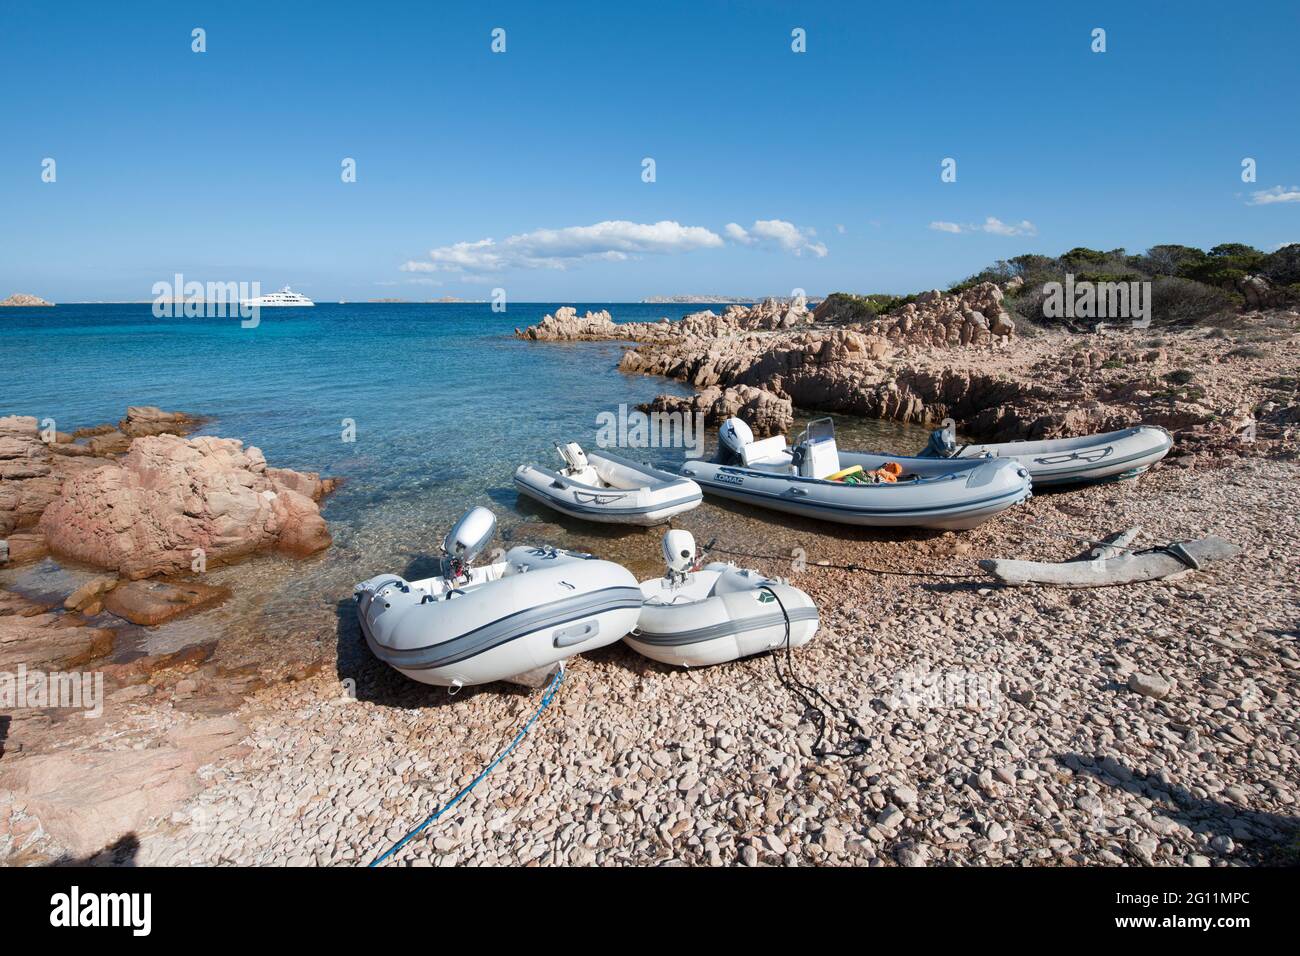 Schlauchboote am Strand von Insel Budelli, Maddalena Archipel, Sardinien, Italien, Europa Stock Photo